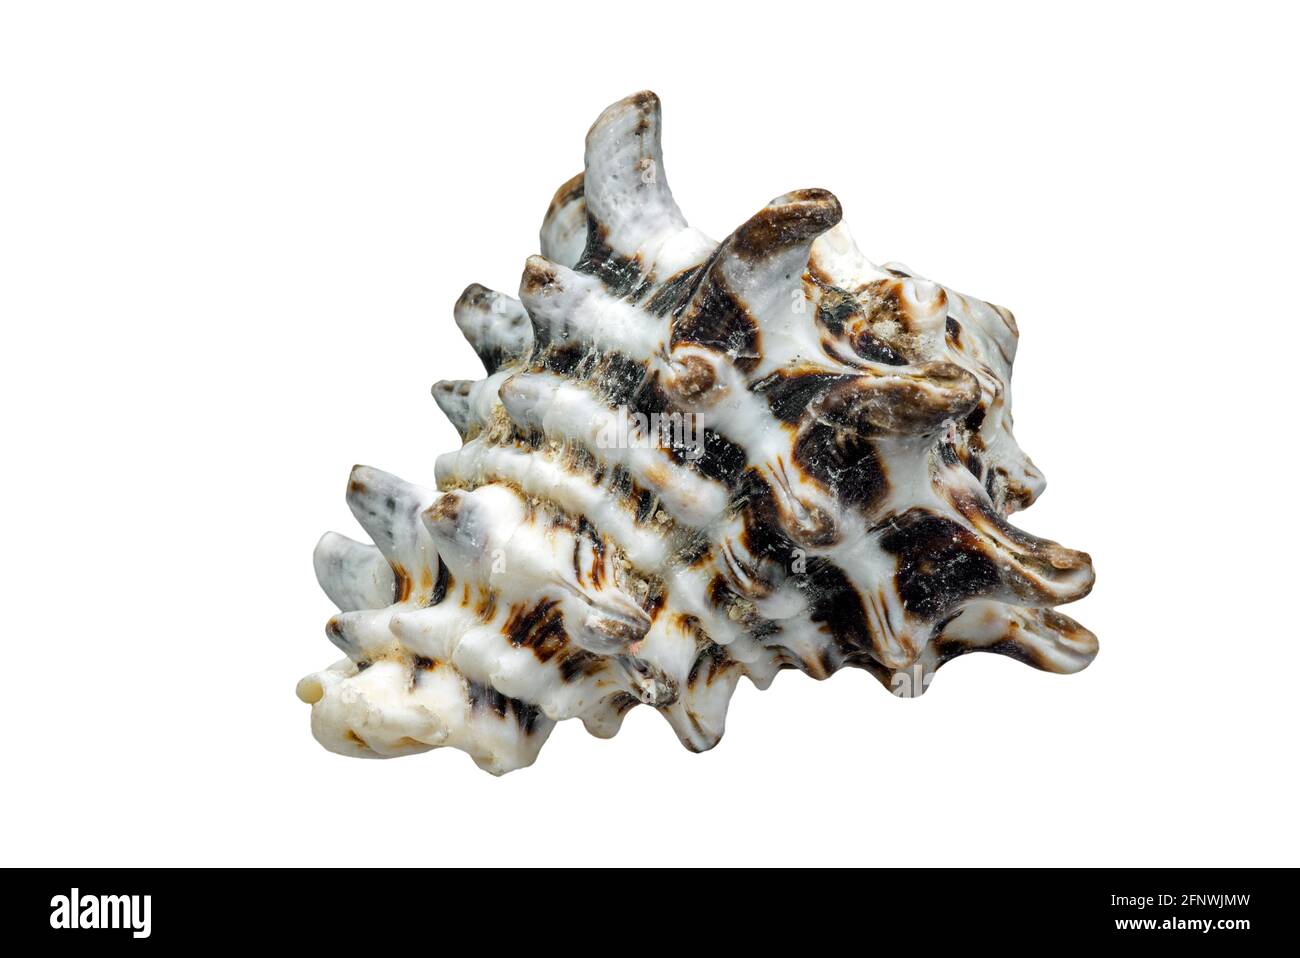 Vasum turbinellus, lumaca di mare tropicale, molluschi gasteropodi marini nativi dell'Oceano Indo-Pacifico su sfondo bianco Foto Stock